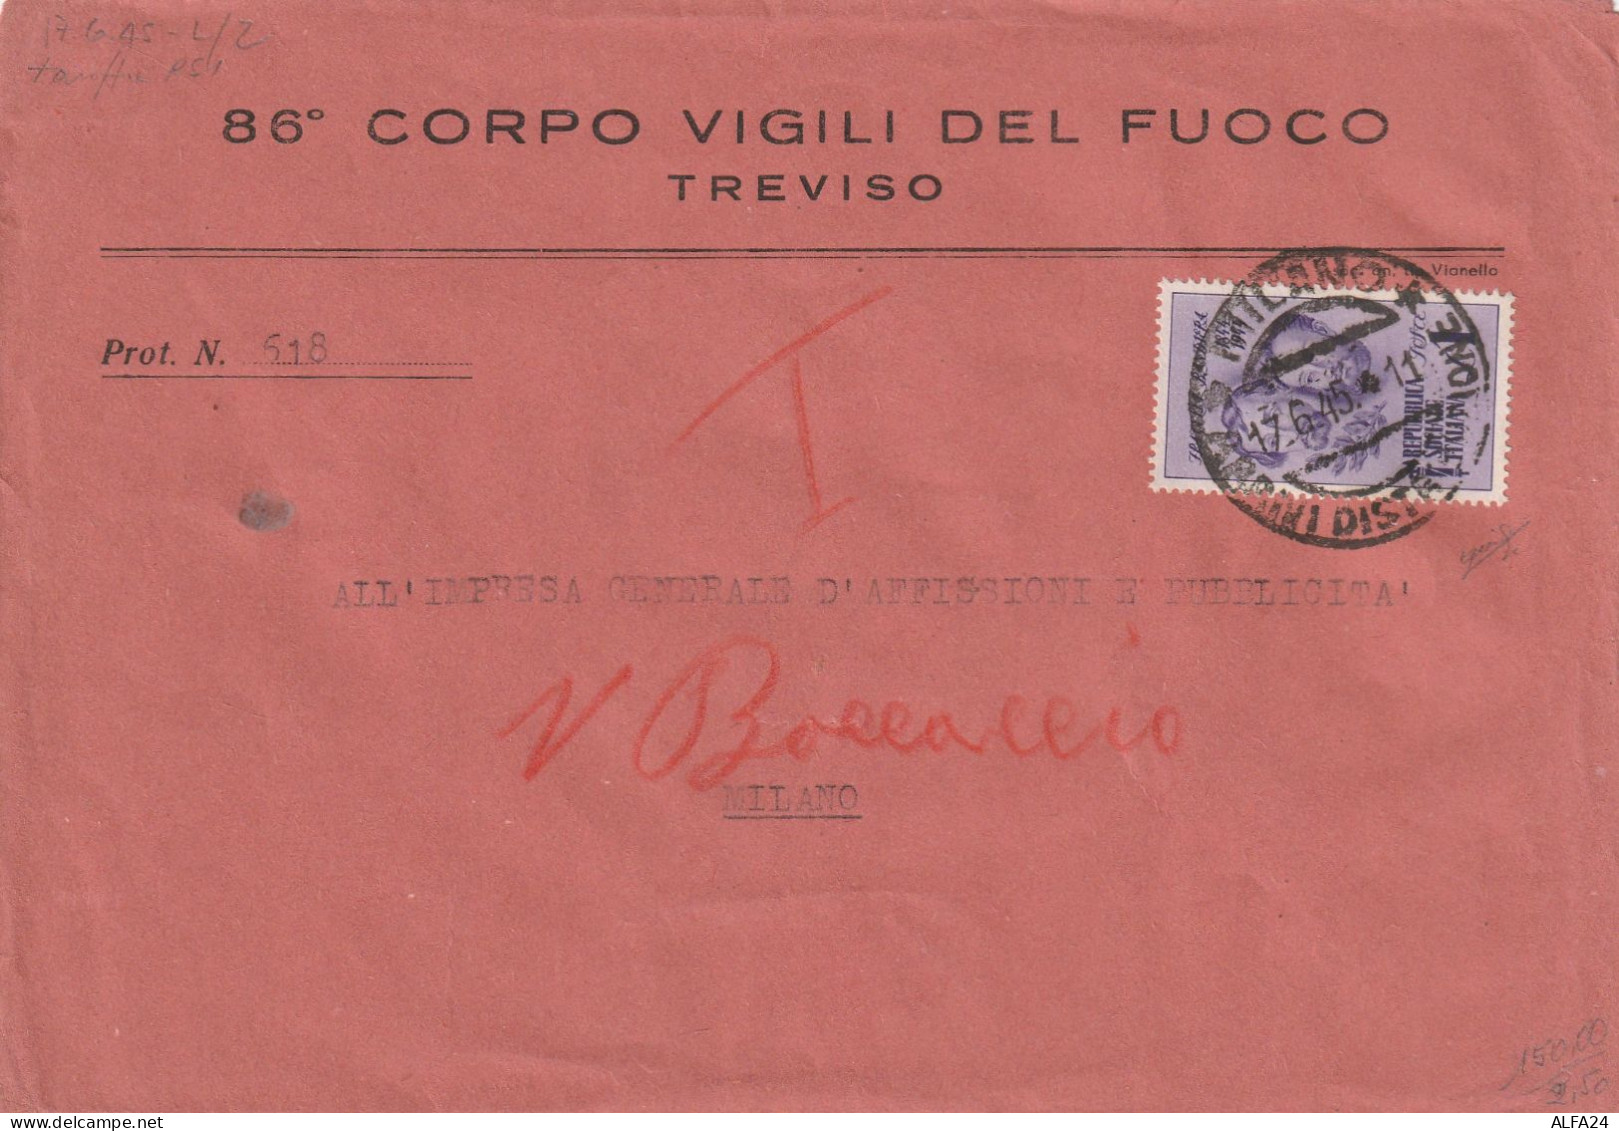 LETTERA 1945 LUOGOTENENZA L.1 F.BANDIERA ISOLATO TIMBRO MILANO  -VIGILI FUOCO (XT500R - Marcophilie